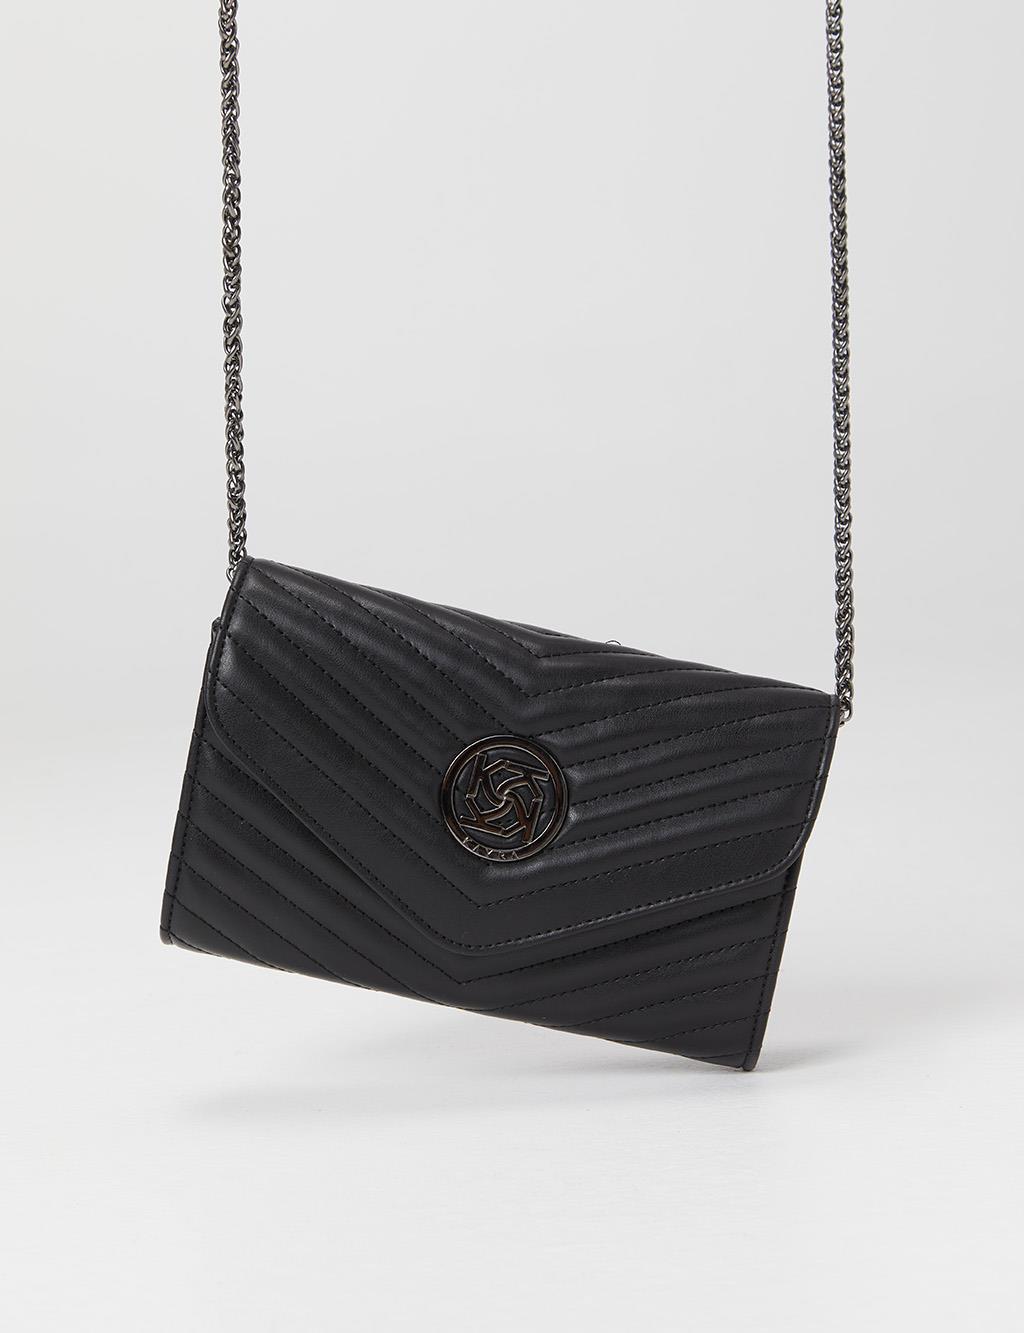 Silver Emblem Quilted Bag Black